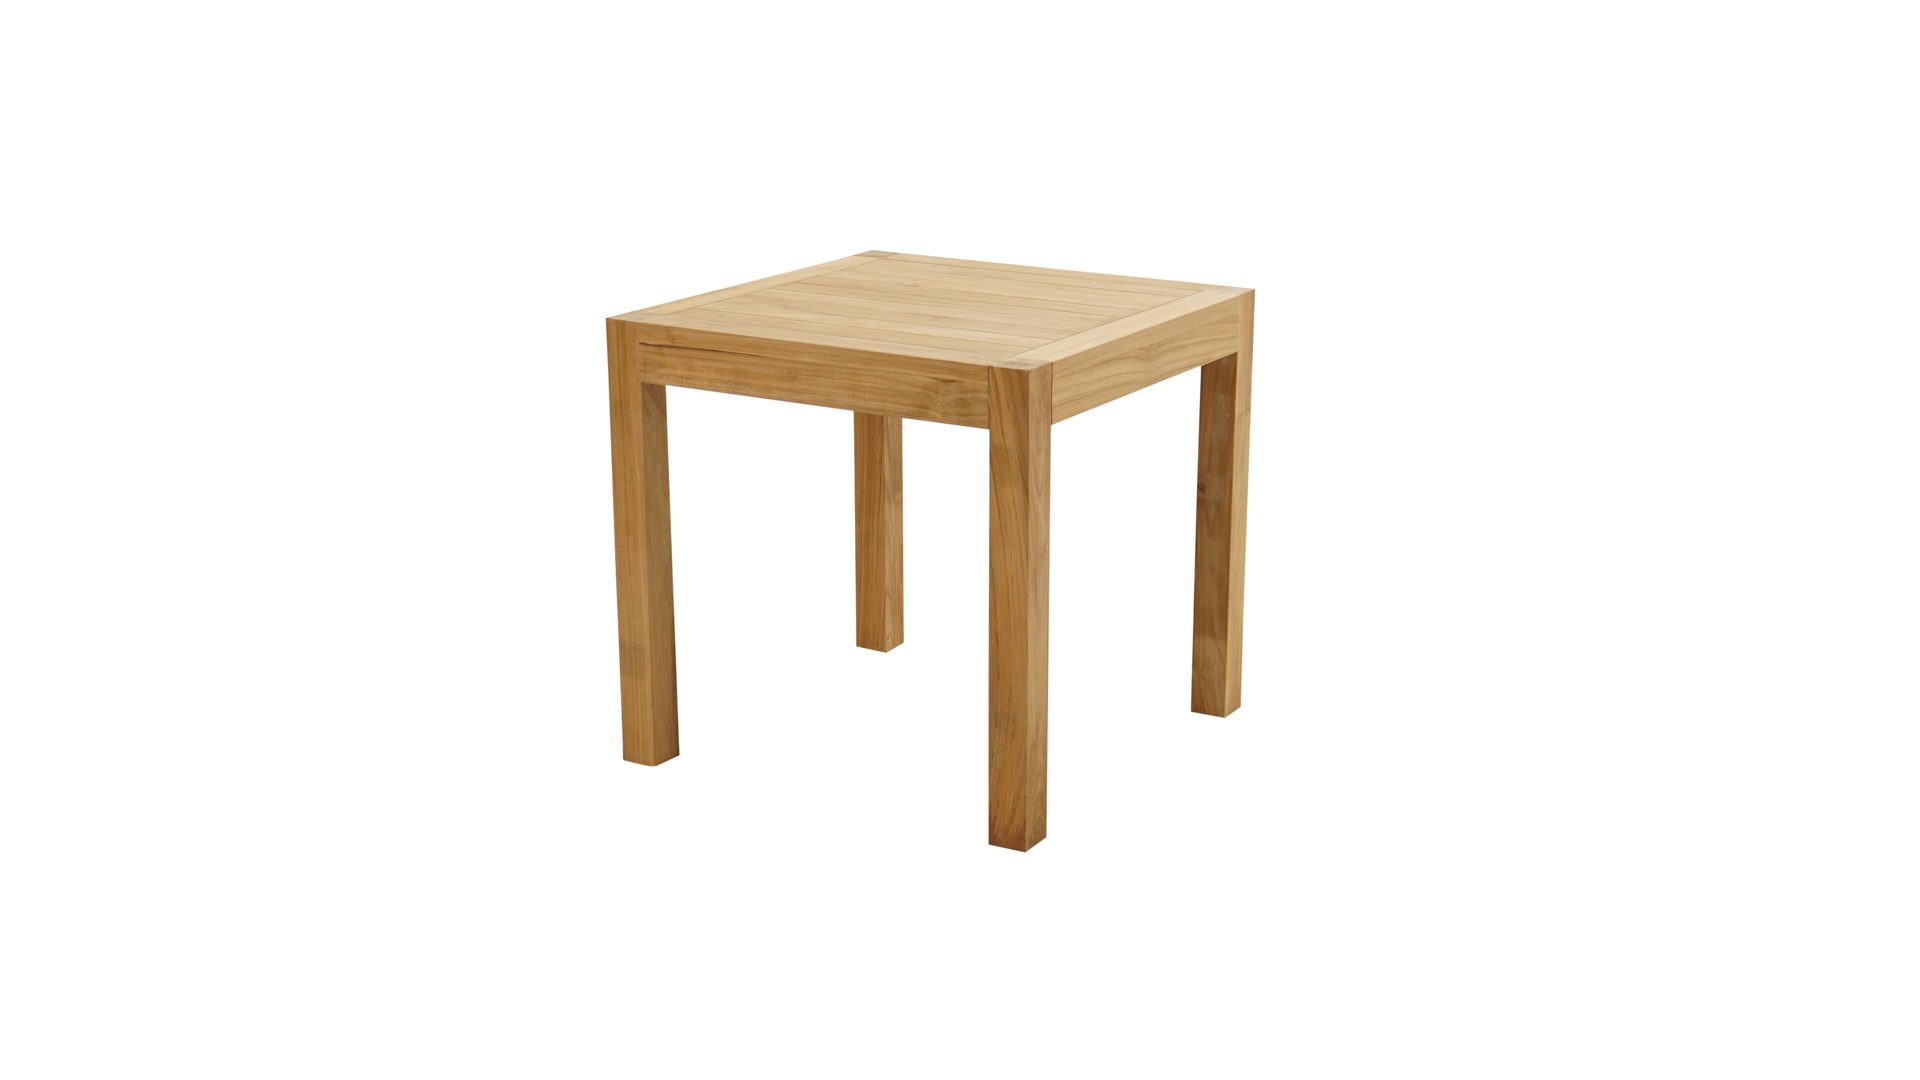 Gartentisch Ploß aus Holz in Holzfarben Ploß® Loft-Tisch New Haven als Gartenmöbel Teakholz – ca. 80 x 80 cm